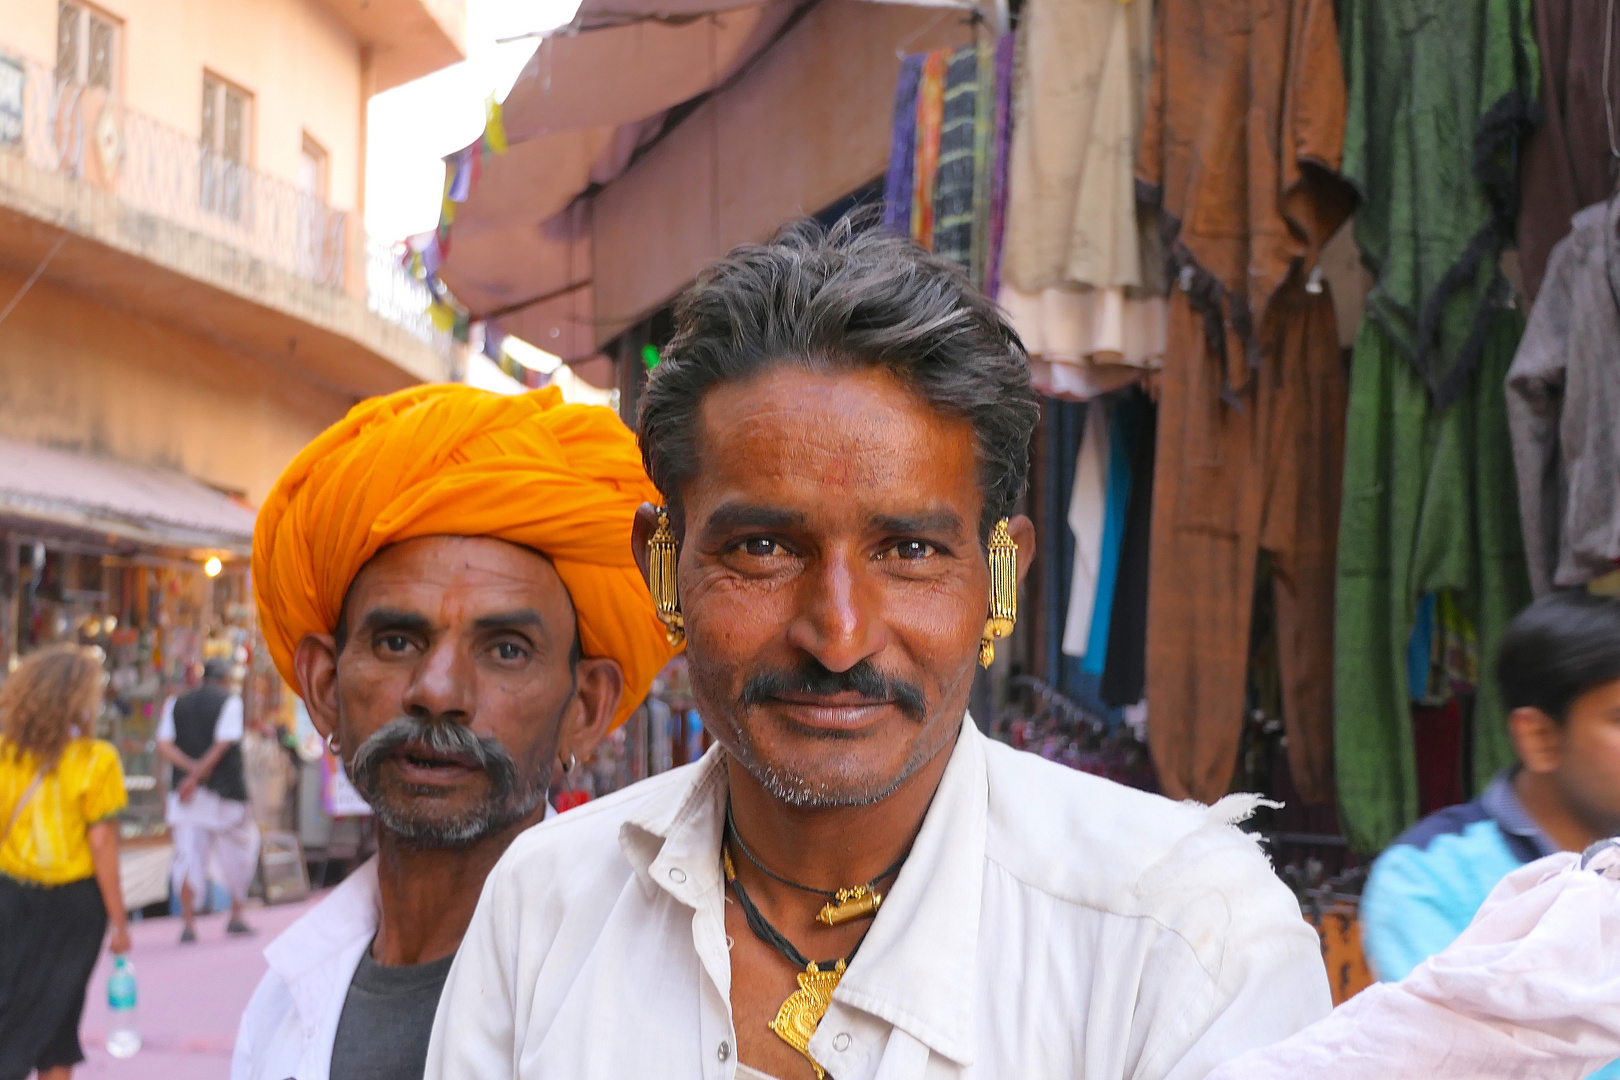 Männer indische Indische Kleidung